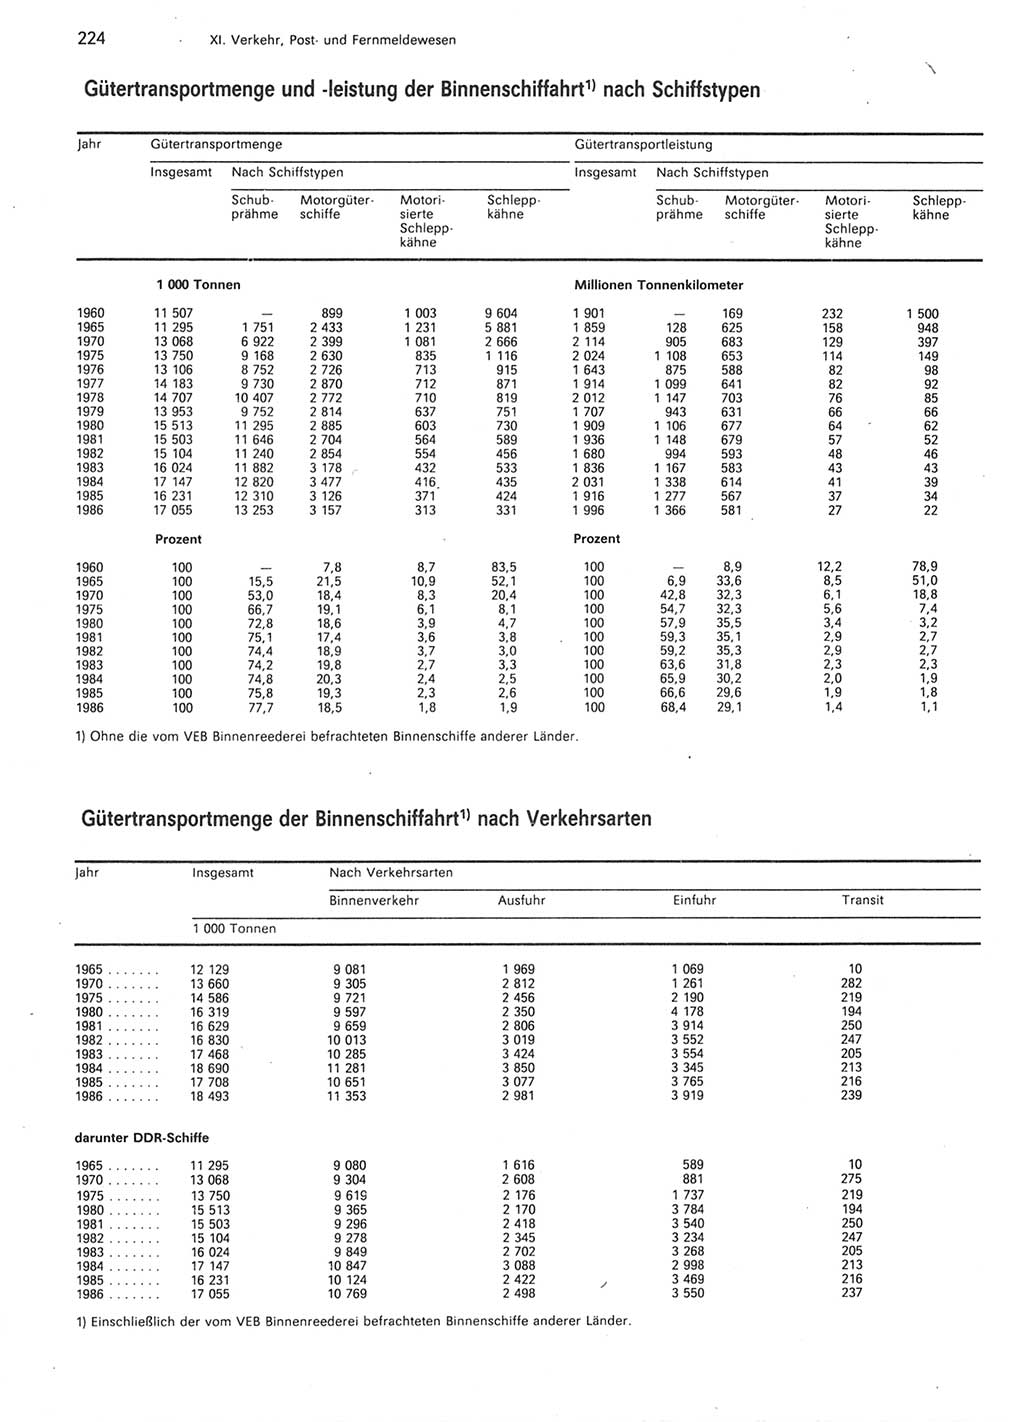 Statistisches Jahrbuch der Deutschen Demokratischen Republik (DDR) 1987, Seite 224 (Stat. Jb. DDR 1987, S. 224)